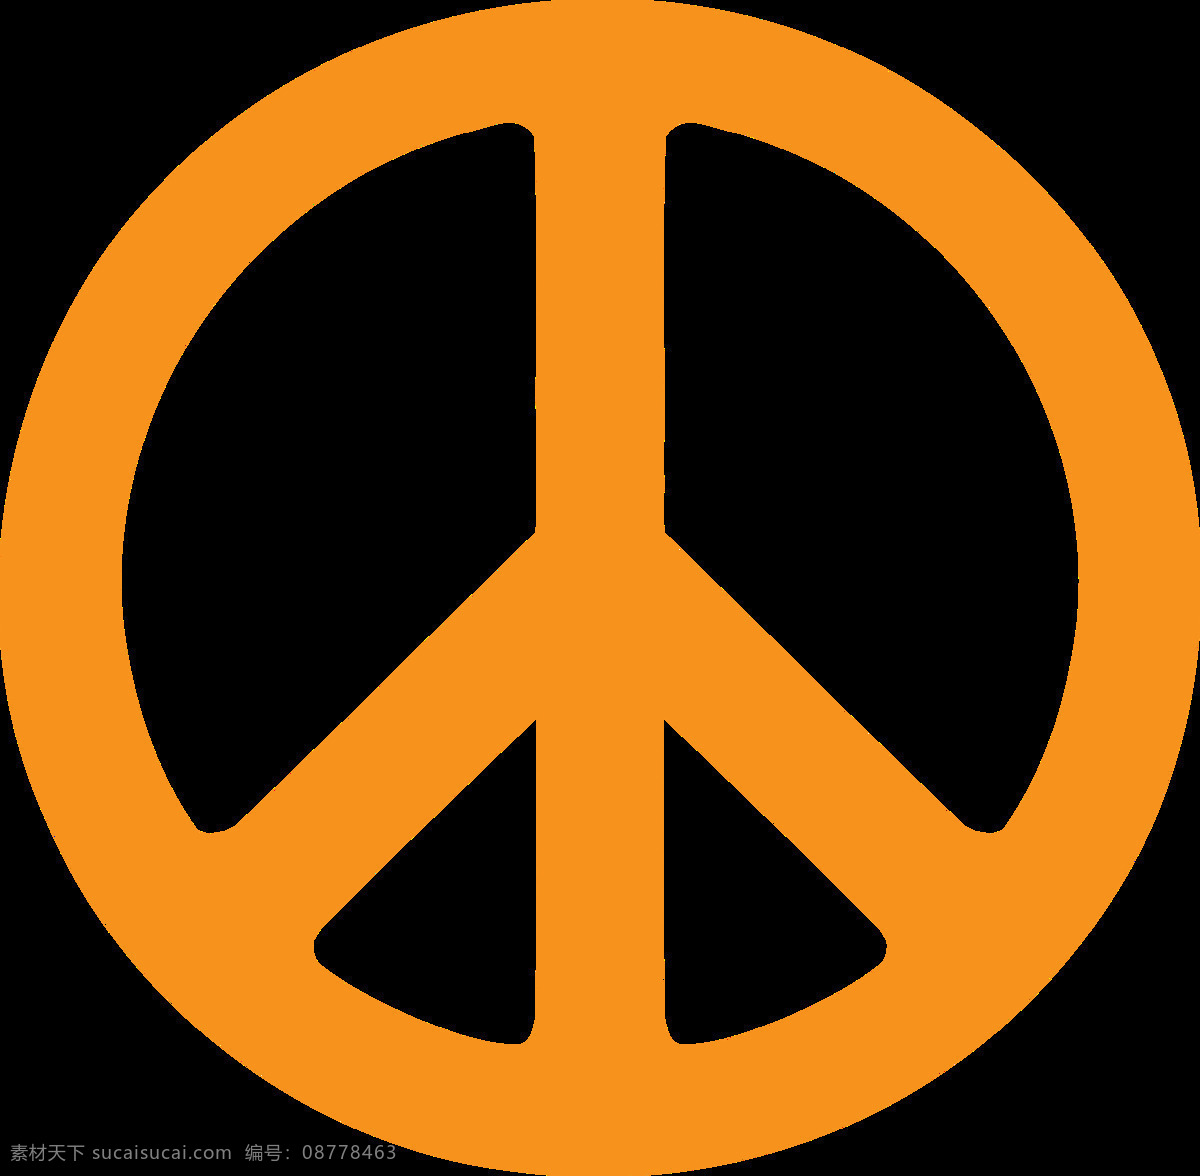 橙色 和平 符号 免 抠 透明 图 层 橙色和平符号 标志 世界 和平符号设计 和平符号 简 笔画 克 洛 诺斯 人形 图案 大全